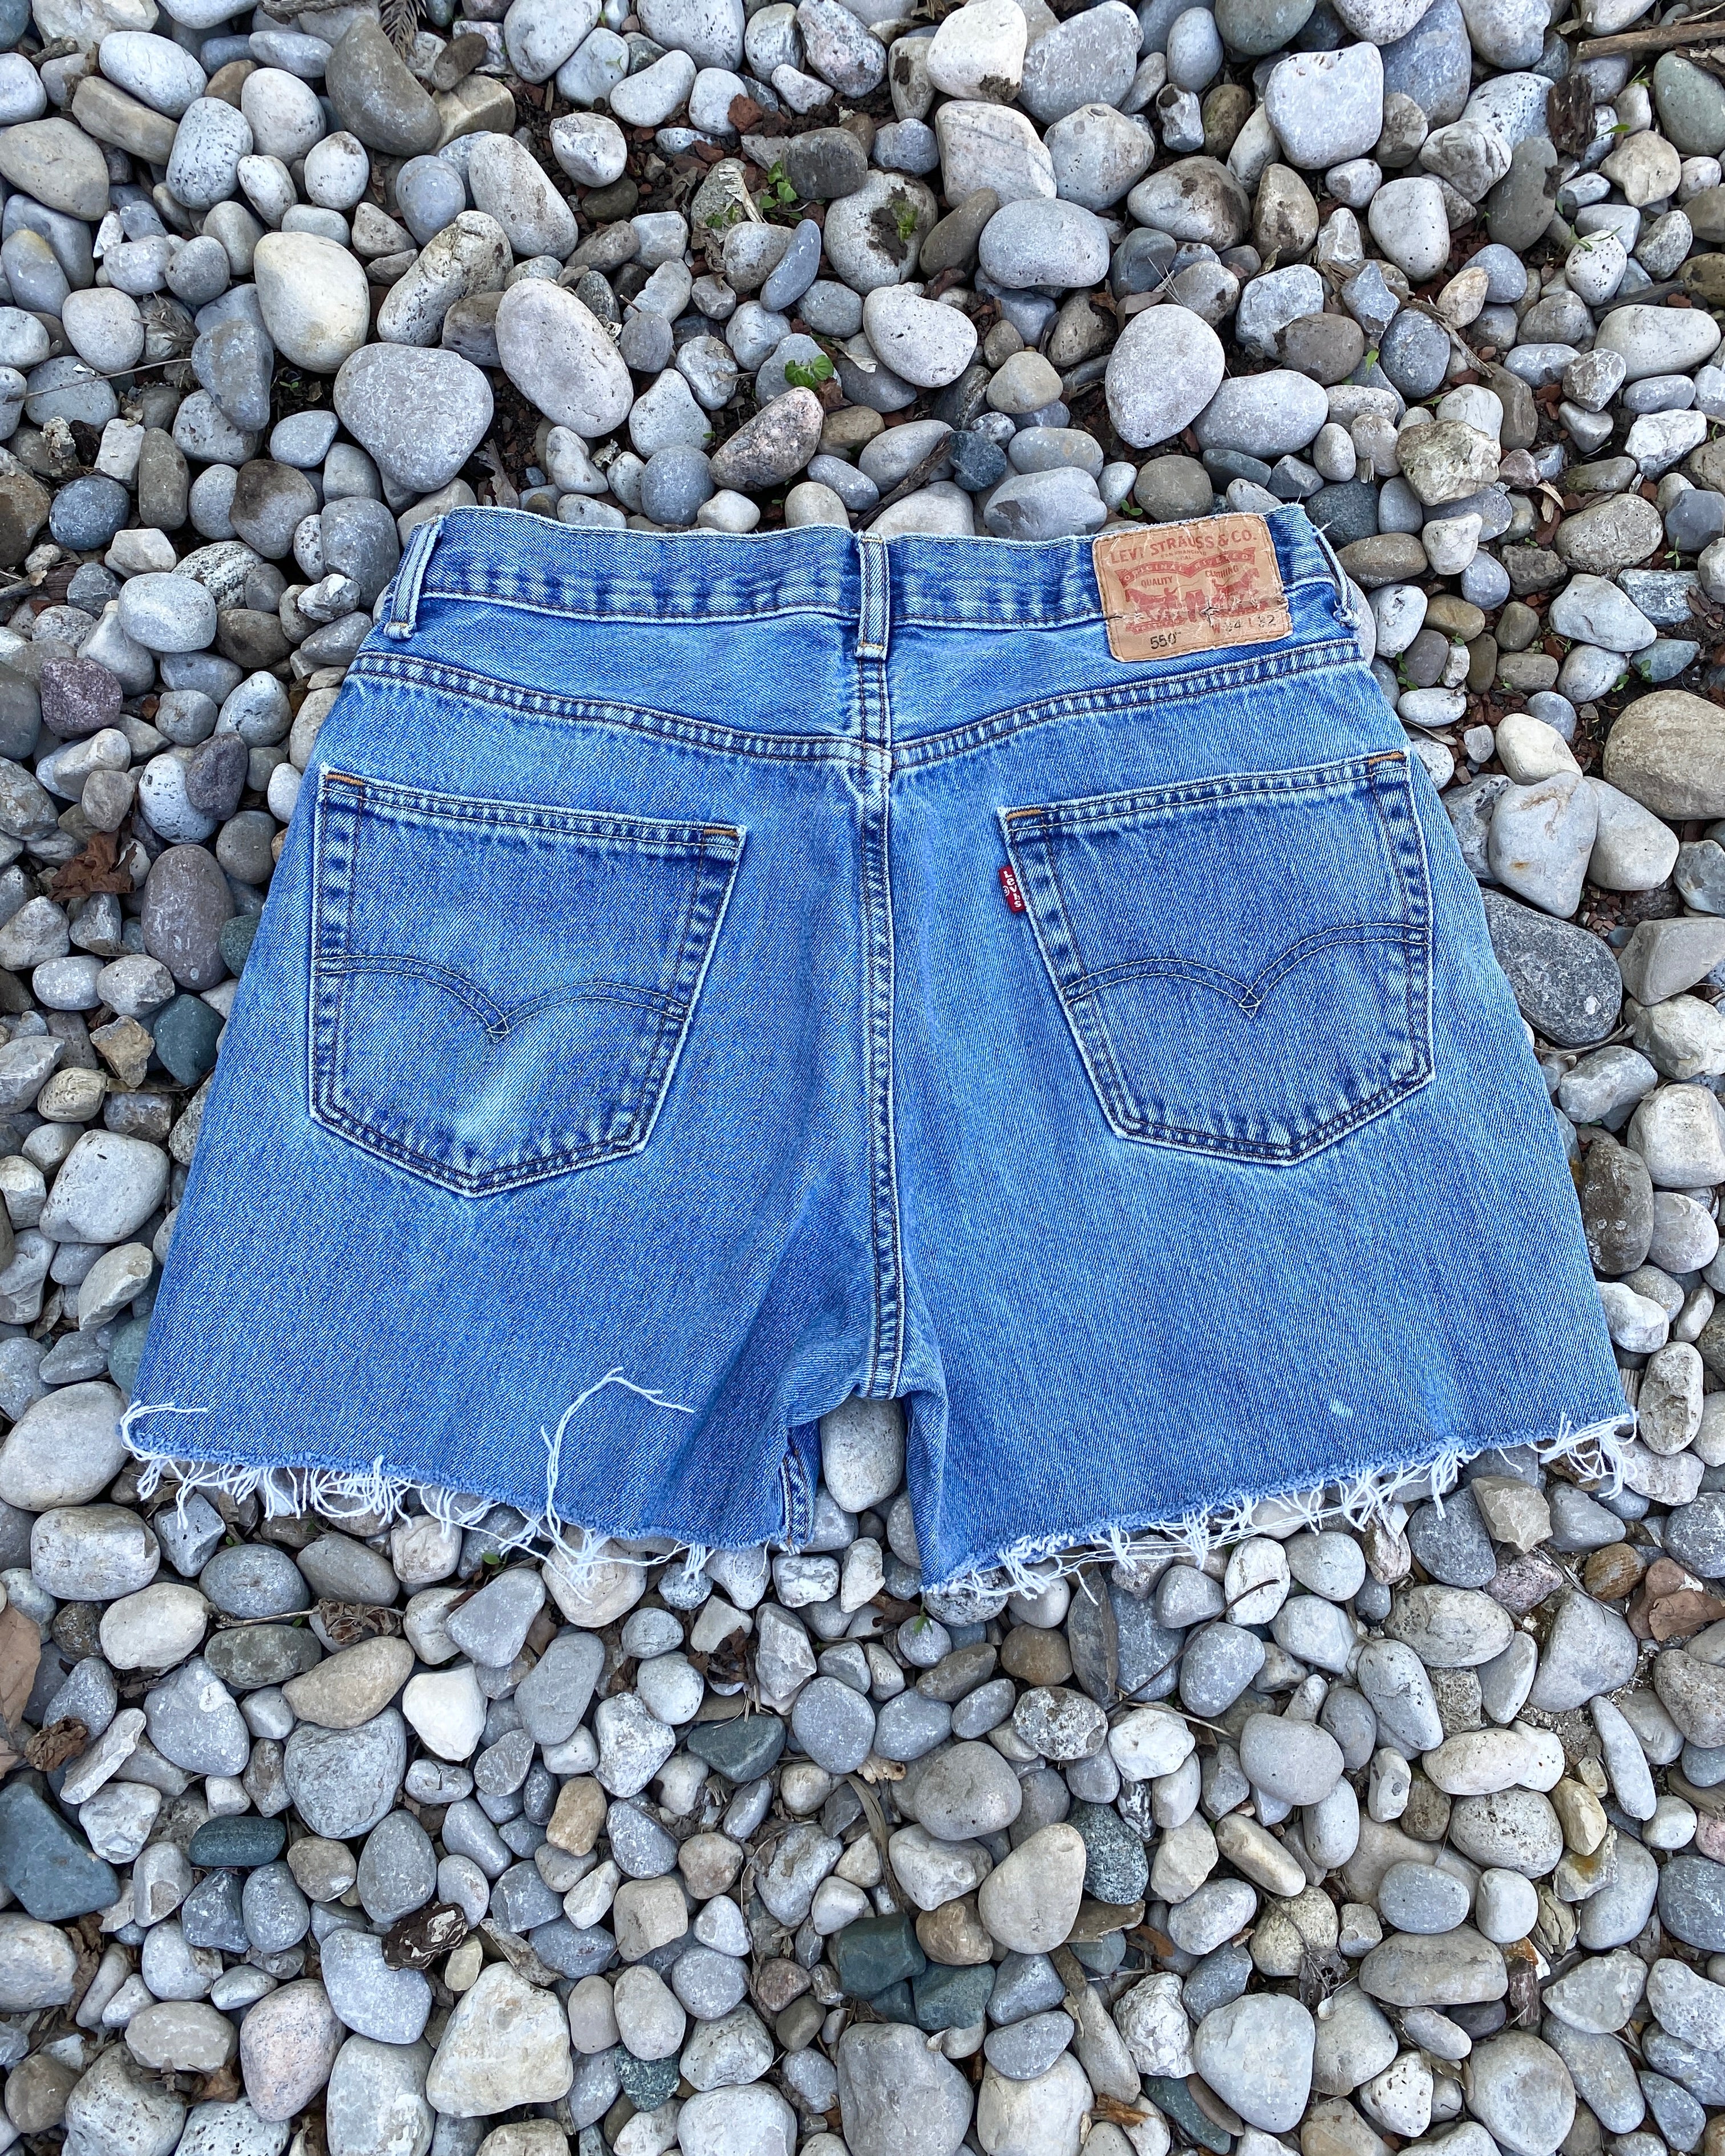 Vintage 1990s Levis 550 Light to Medium Wash Denim Jeans Cutoffs Shorts 33